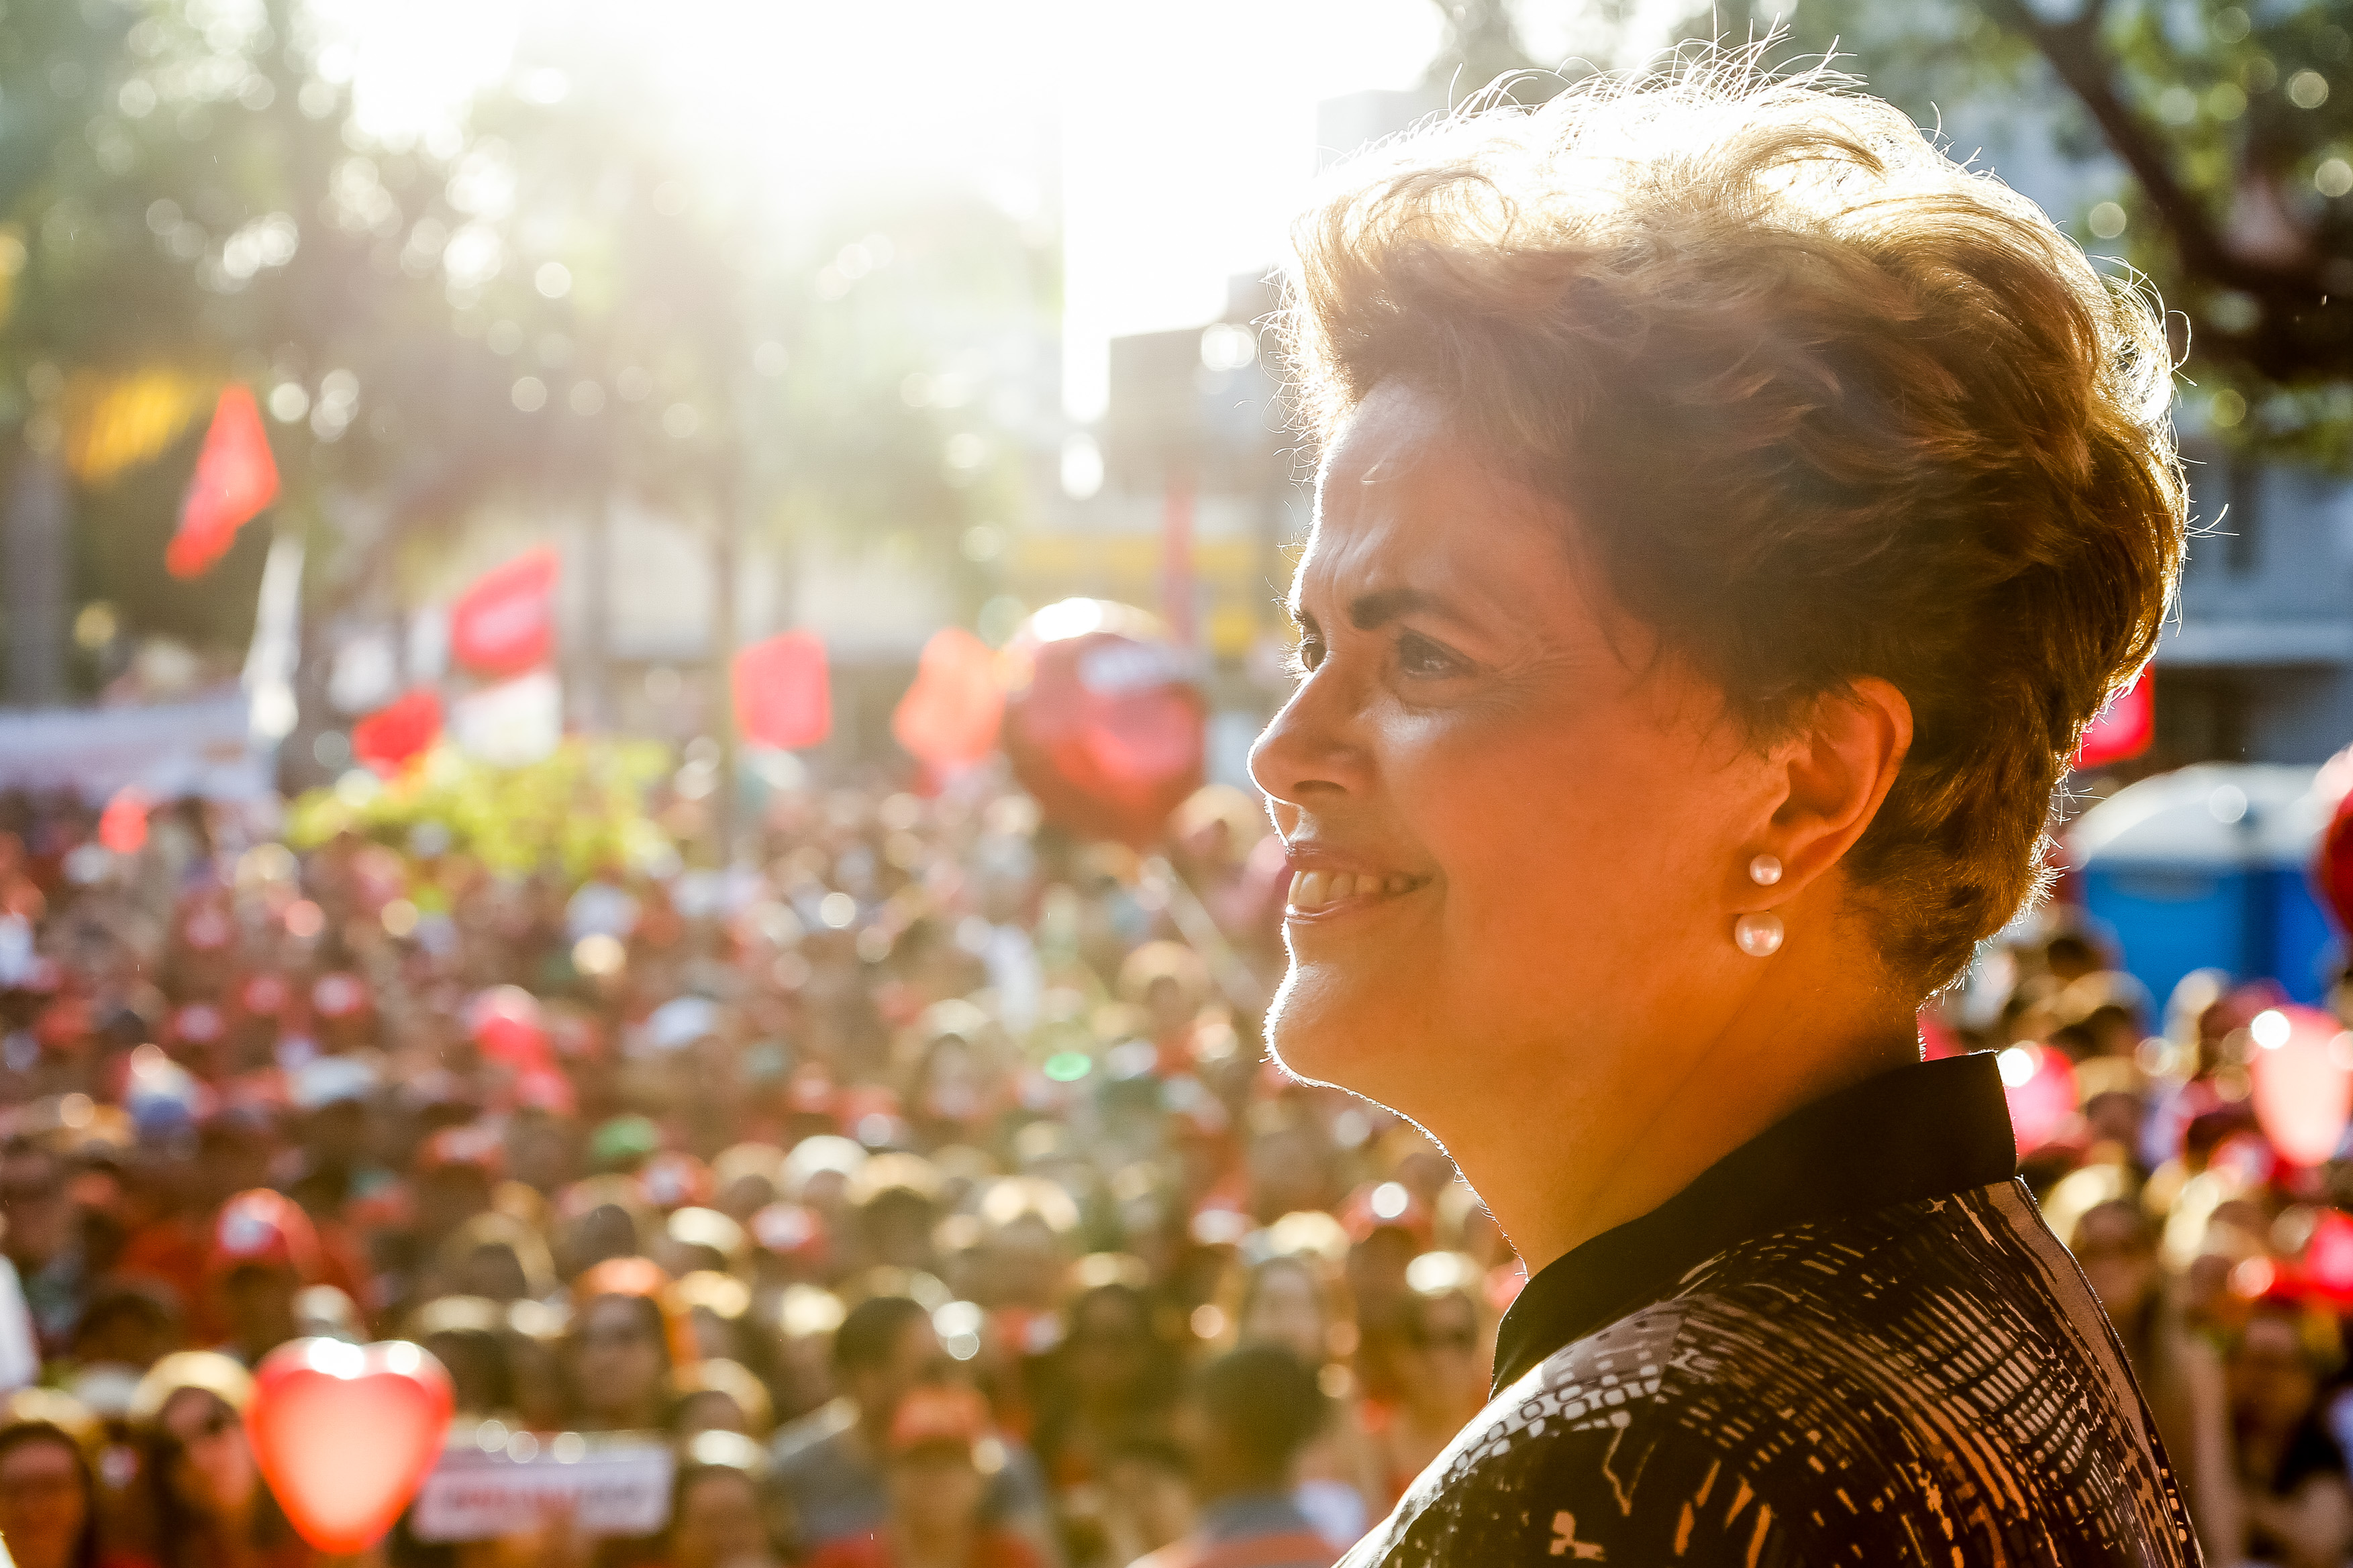 “Brasil precisa de banho de democracia”, afirma Dilma na Itália